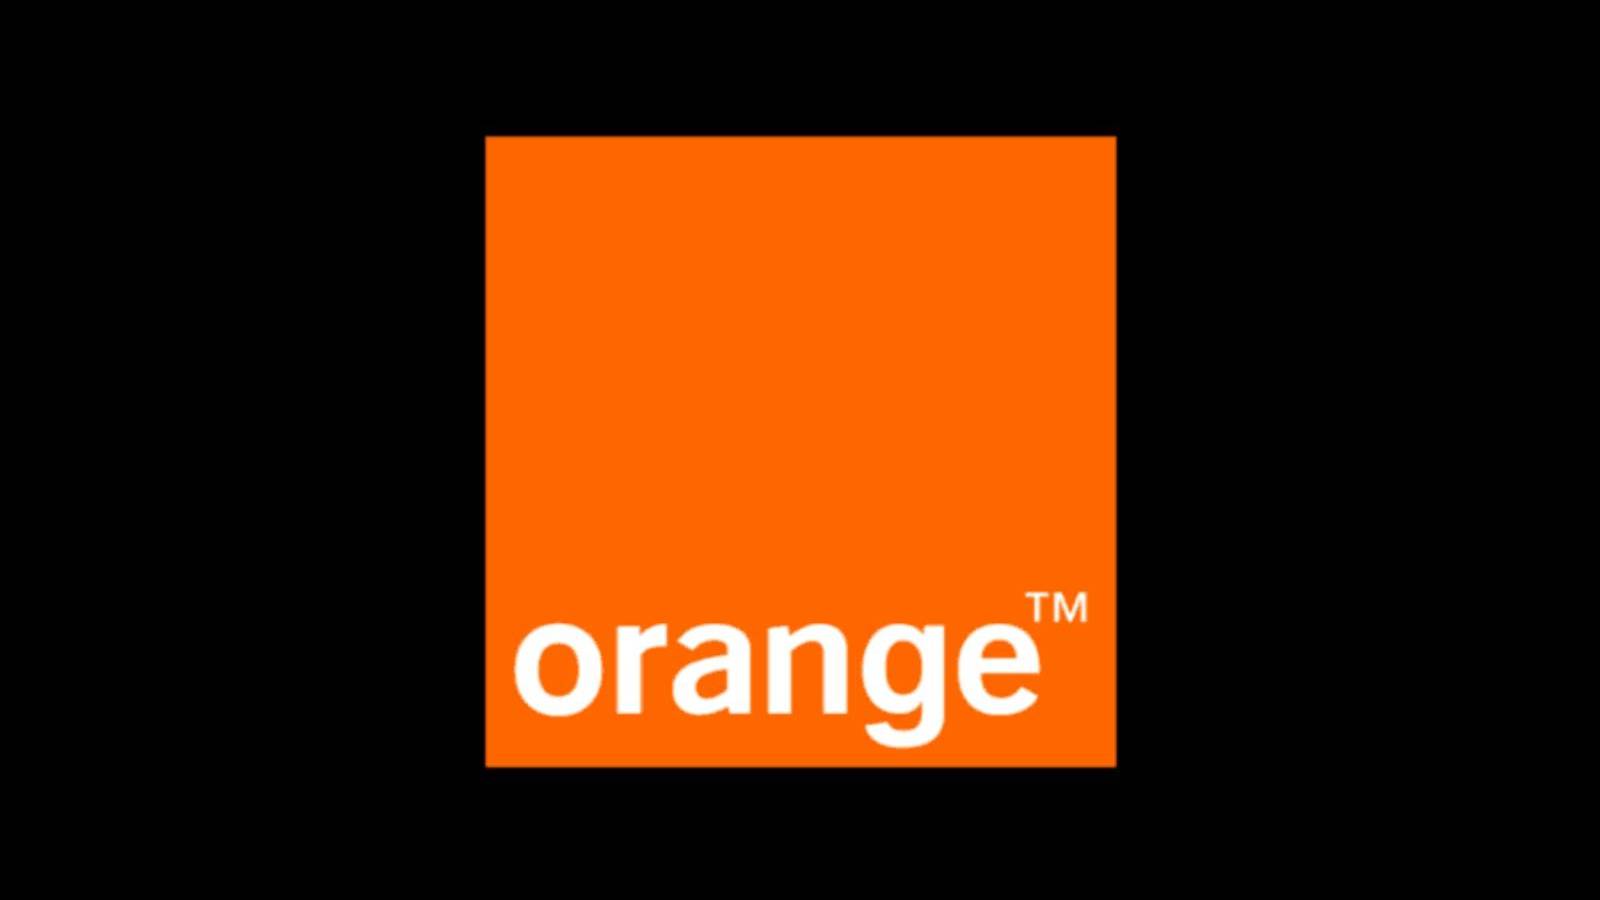 Orange OFFICIEEL Miljoenen gerichte klanten Belangrijke aankondiging